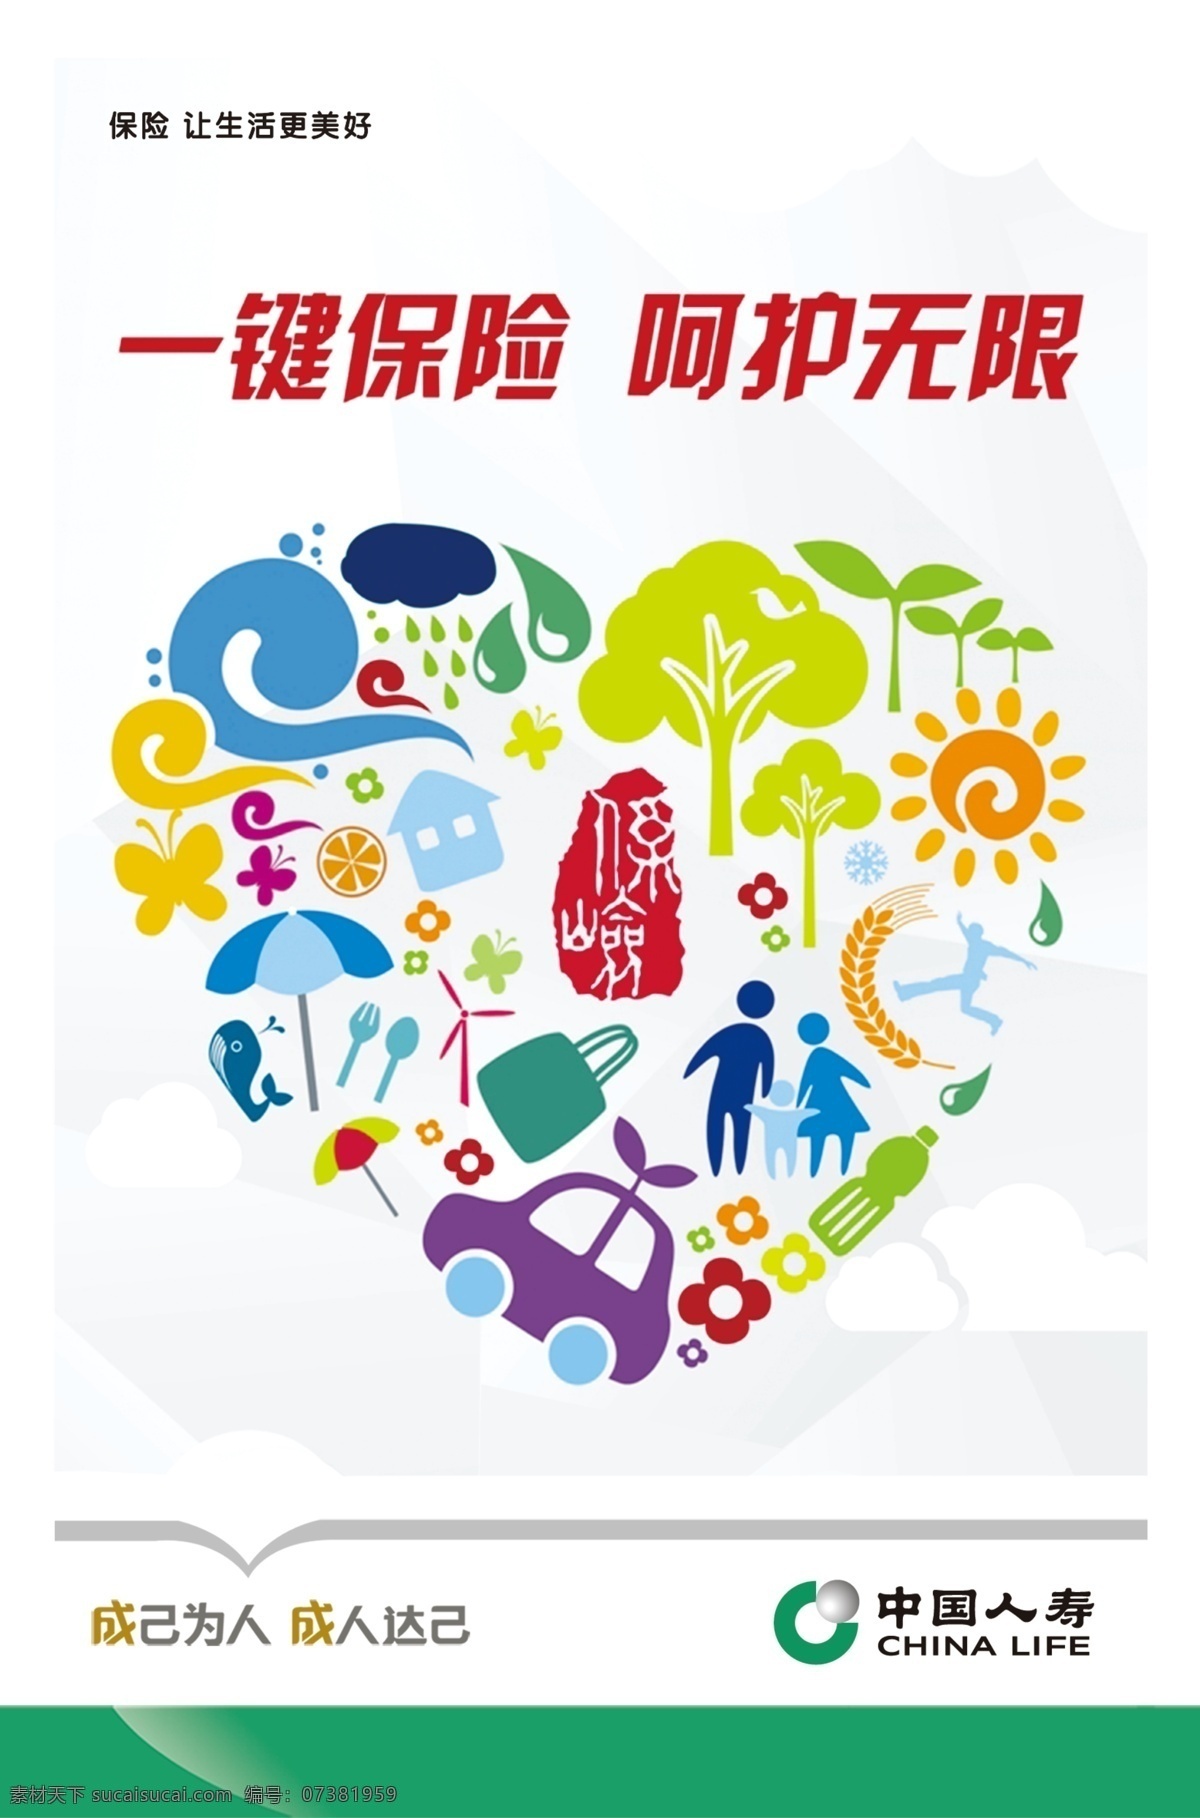 中国人寿文化 中国人寿 人寿文化 保险 保险展板 险种 保险介绍 分层